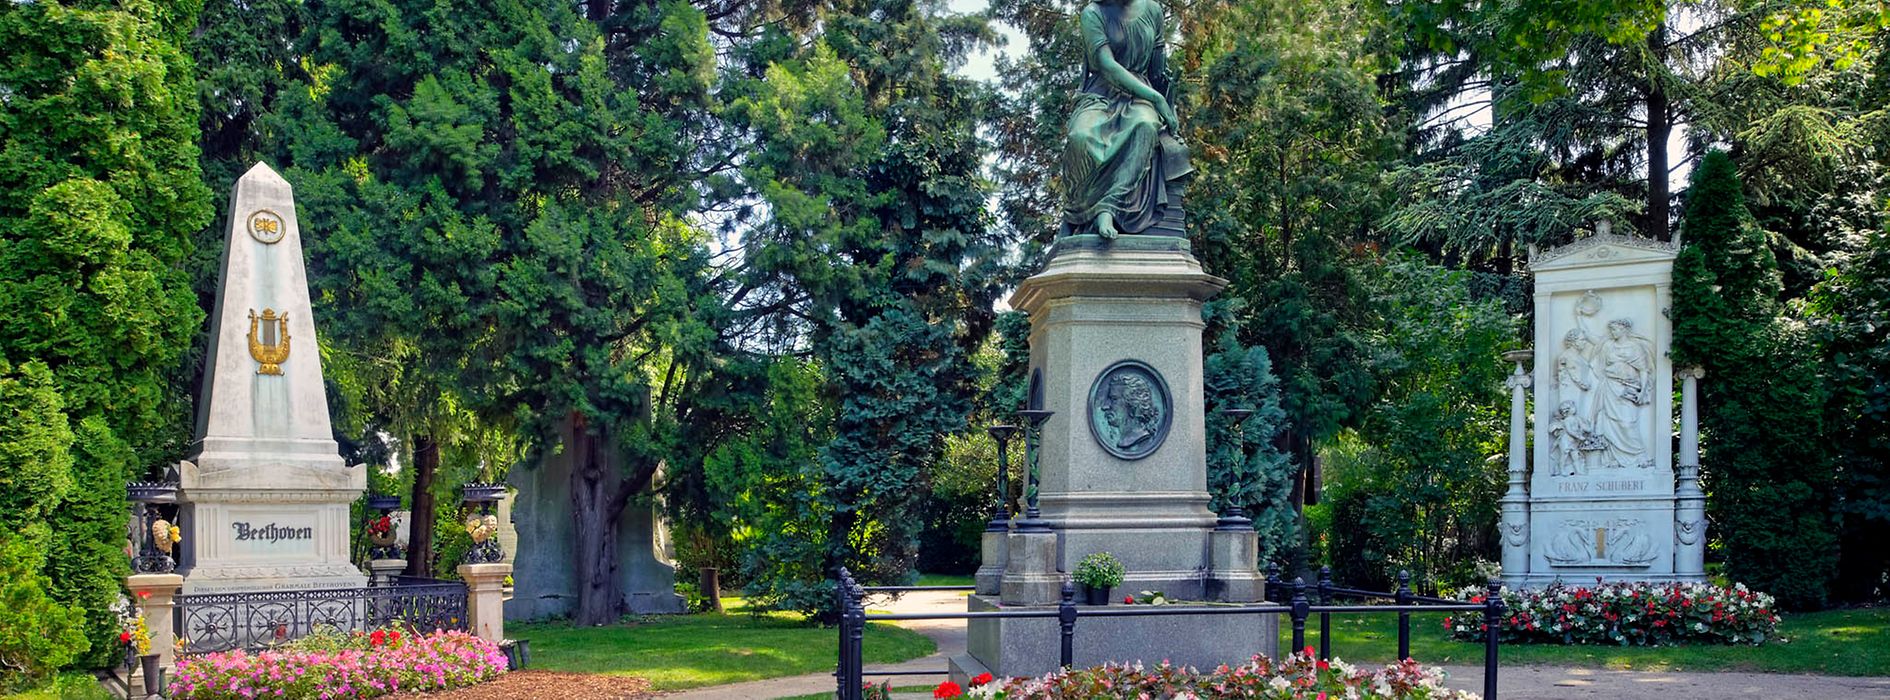 Mozart díszsírhelye a Központi temetőben